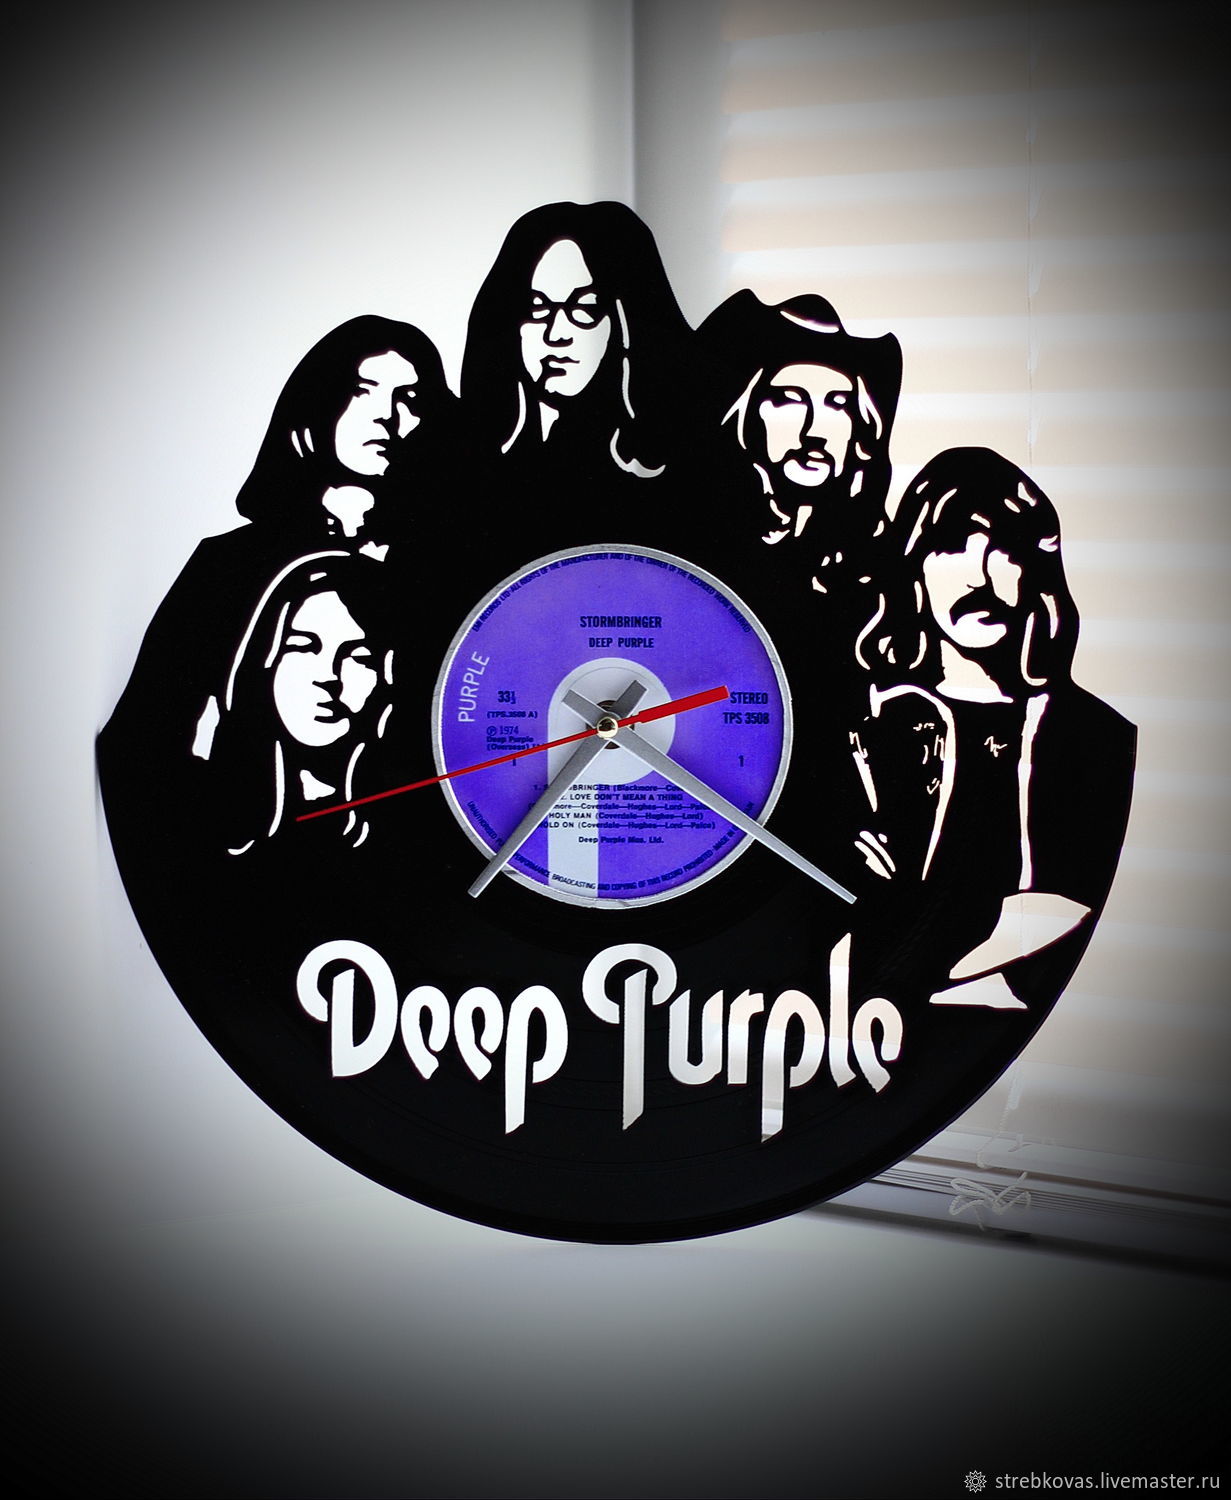 Купить дип перпл. Группа дип перпл. Часы из виниловой пластинки Deep Purple. Дип перпл виниловые пластинки. Постеры дип перпл.